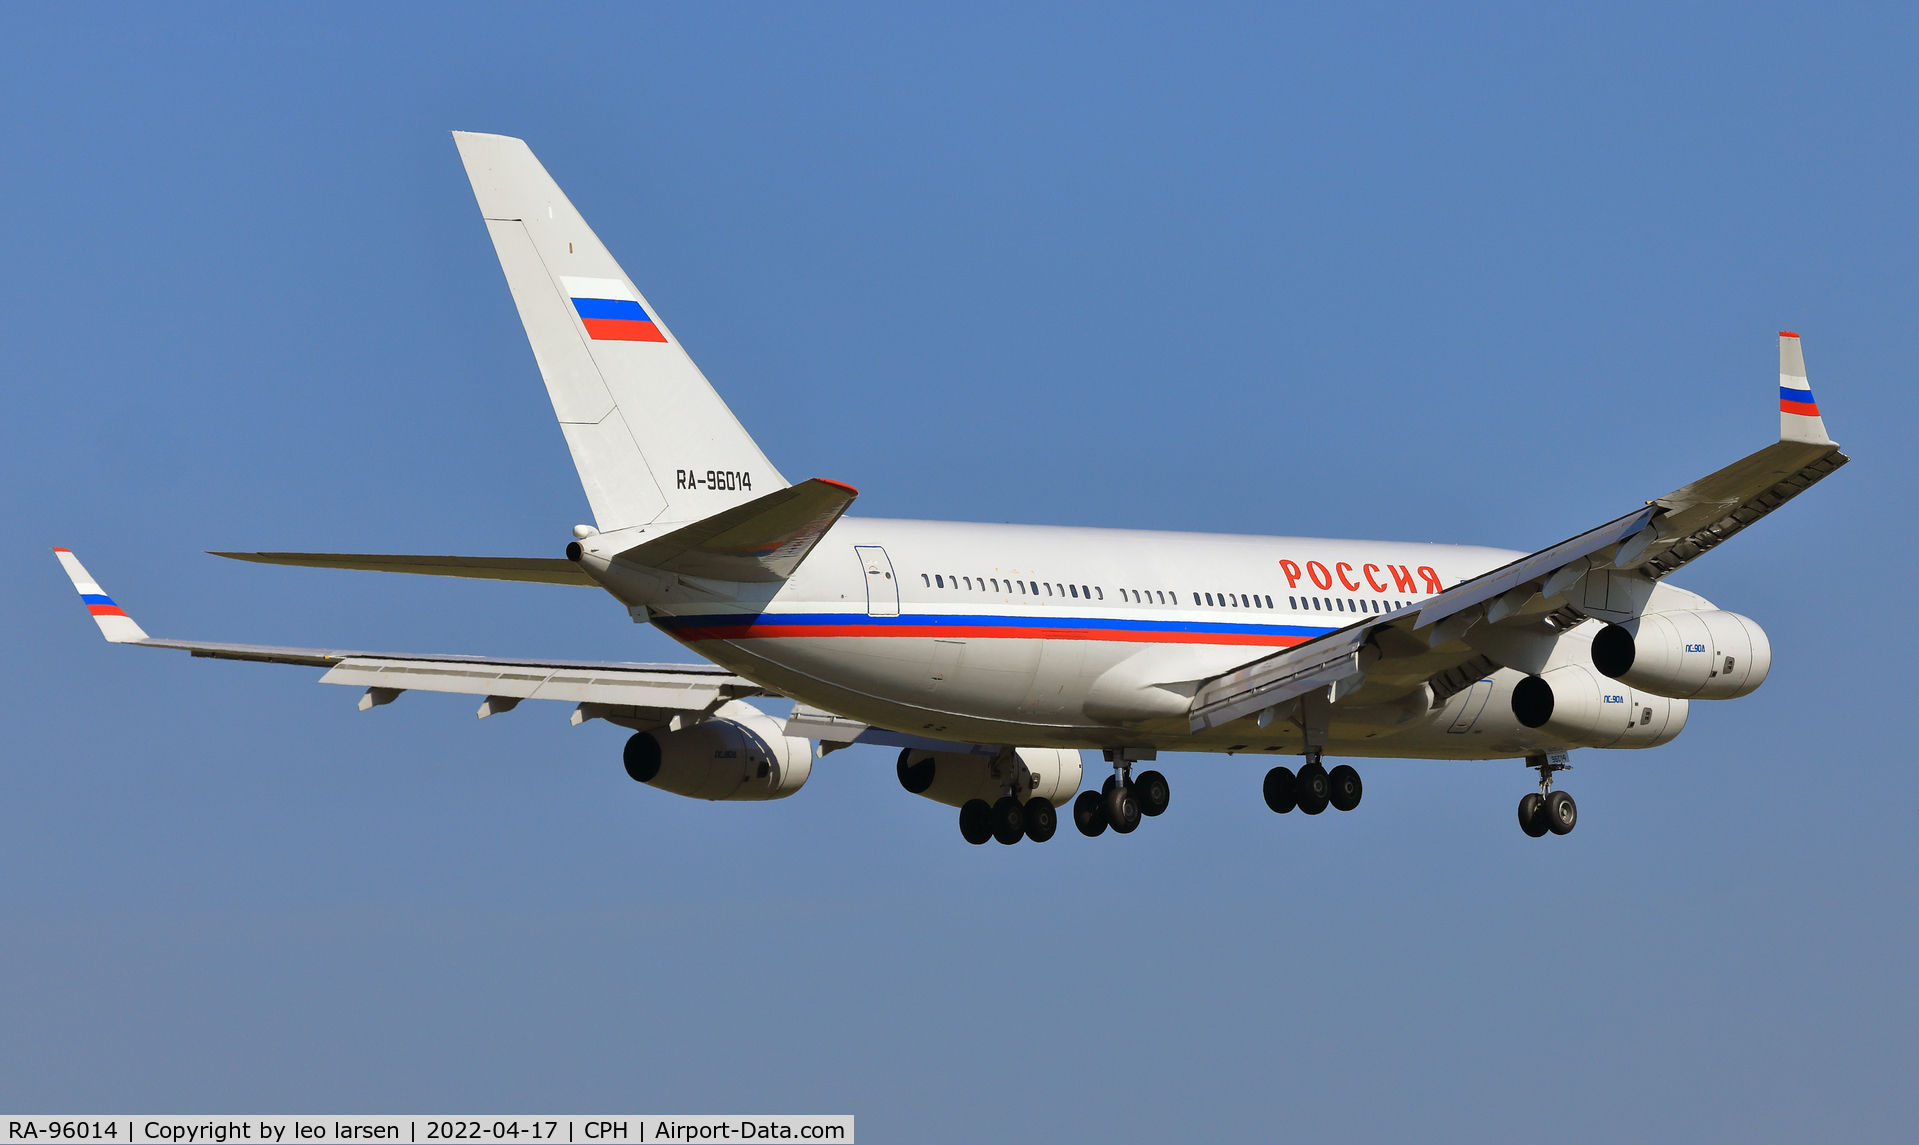 RA-96014, 2004 Ilyushin Il-96-300 C/N 74393202011, Copenhagen 17.4.2022